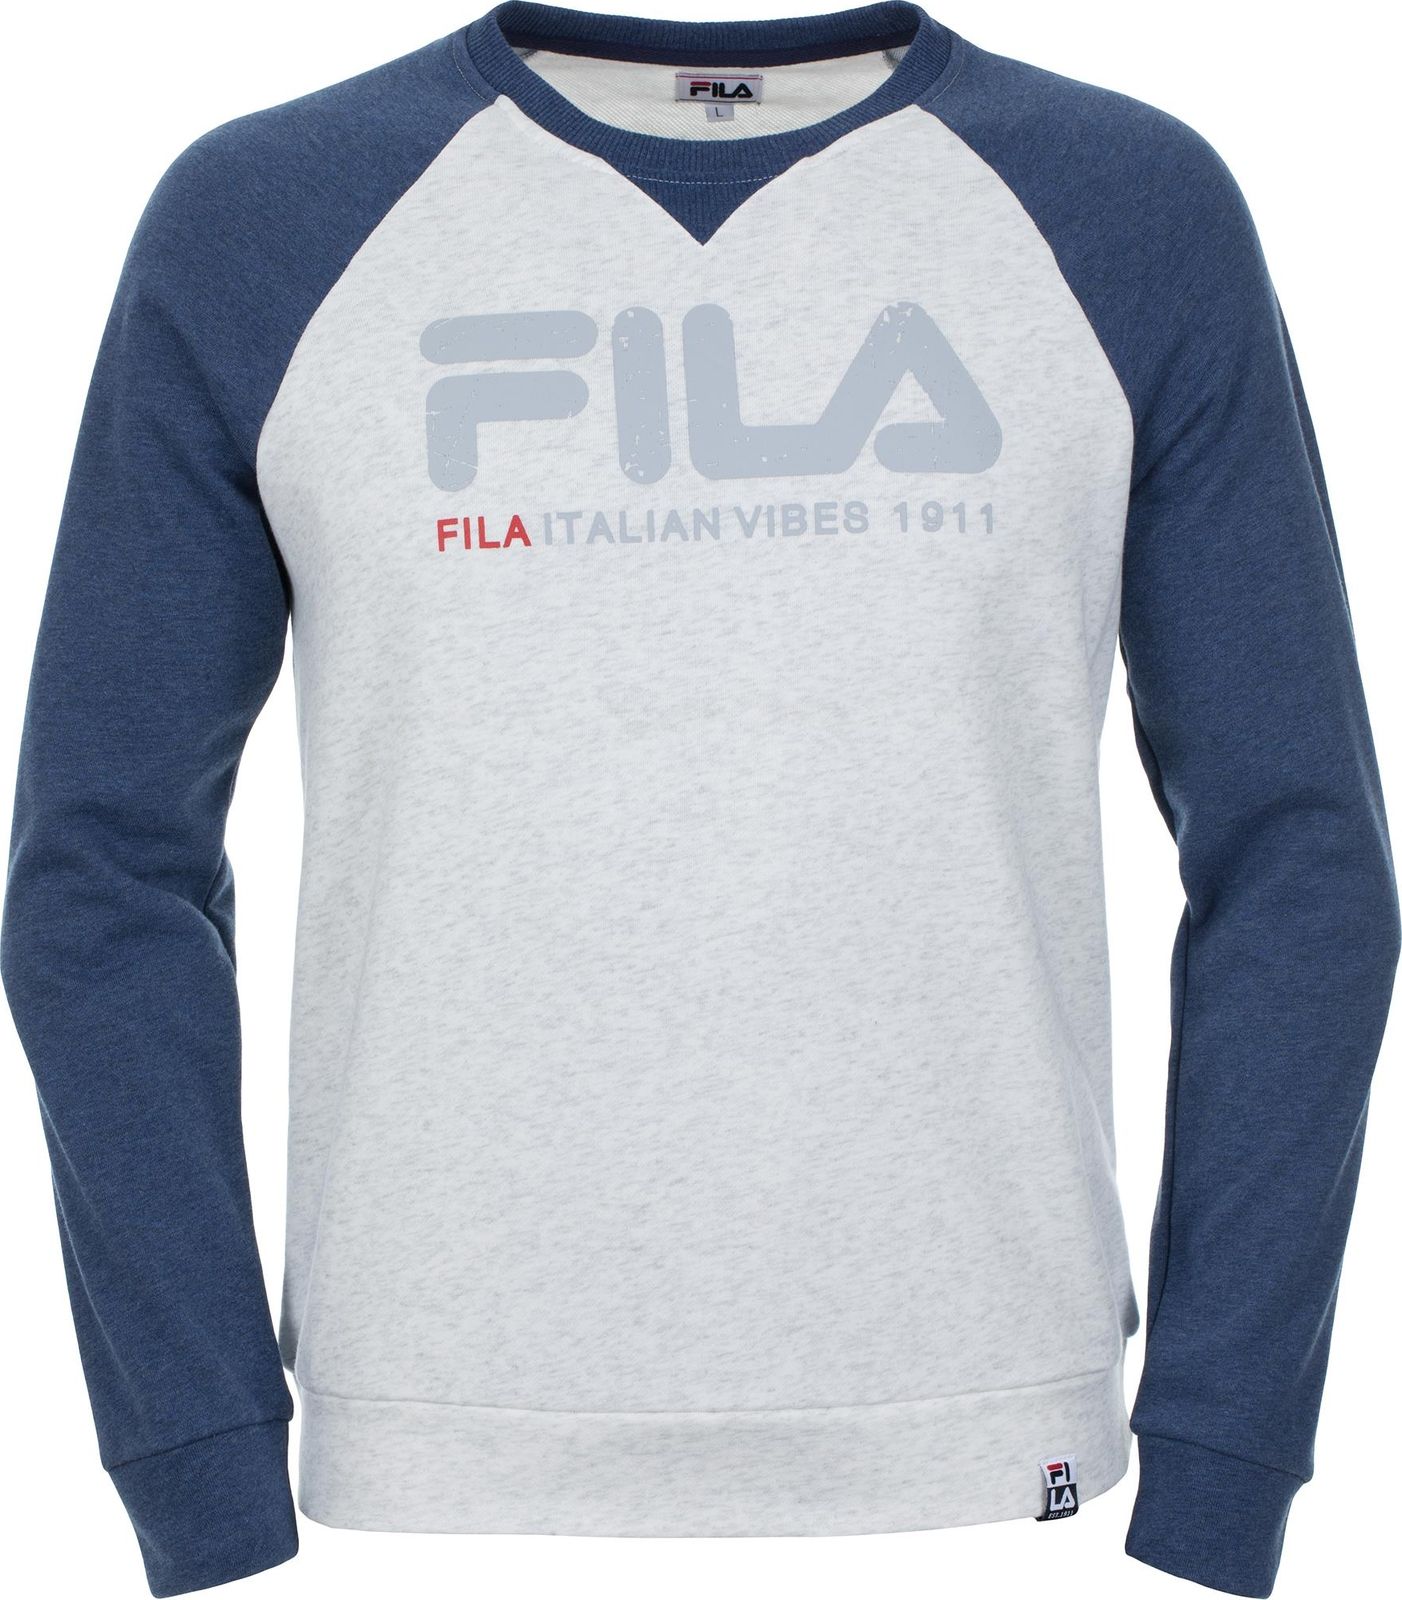   Fila Men's jumper, : -. S19AFLJUM03-1A.  M (48)